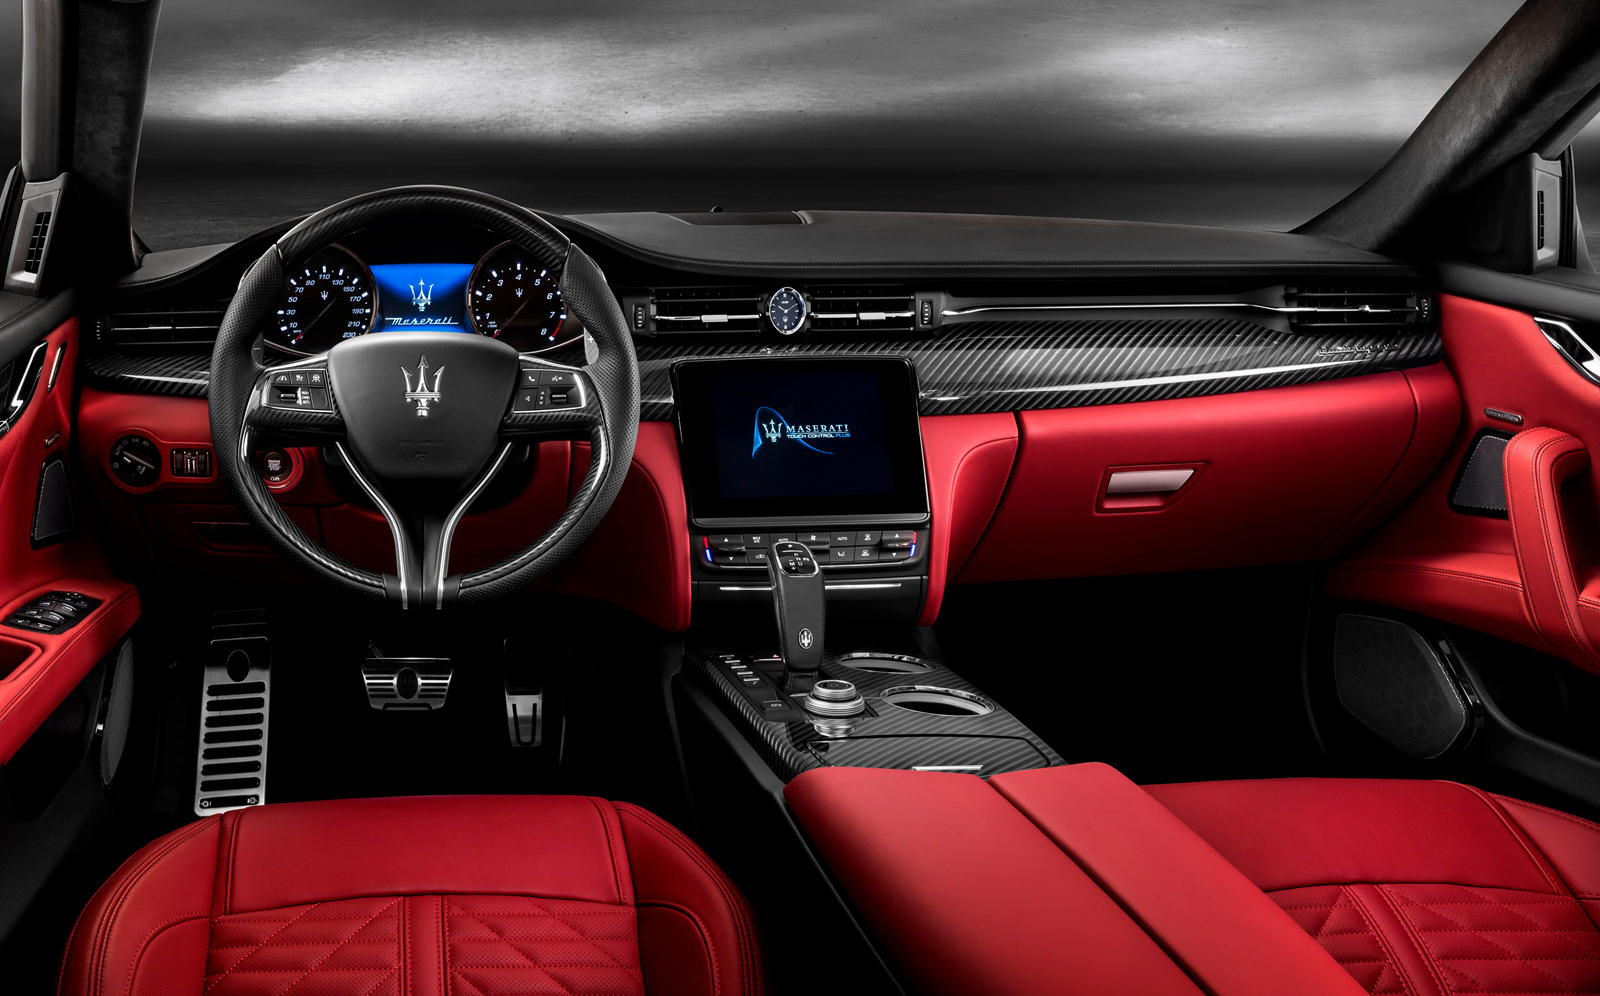 2017 Maserati Quattroporte Dashboard